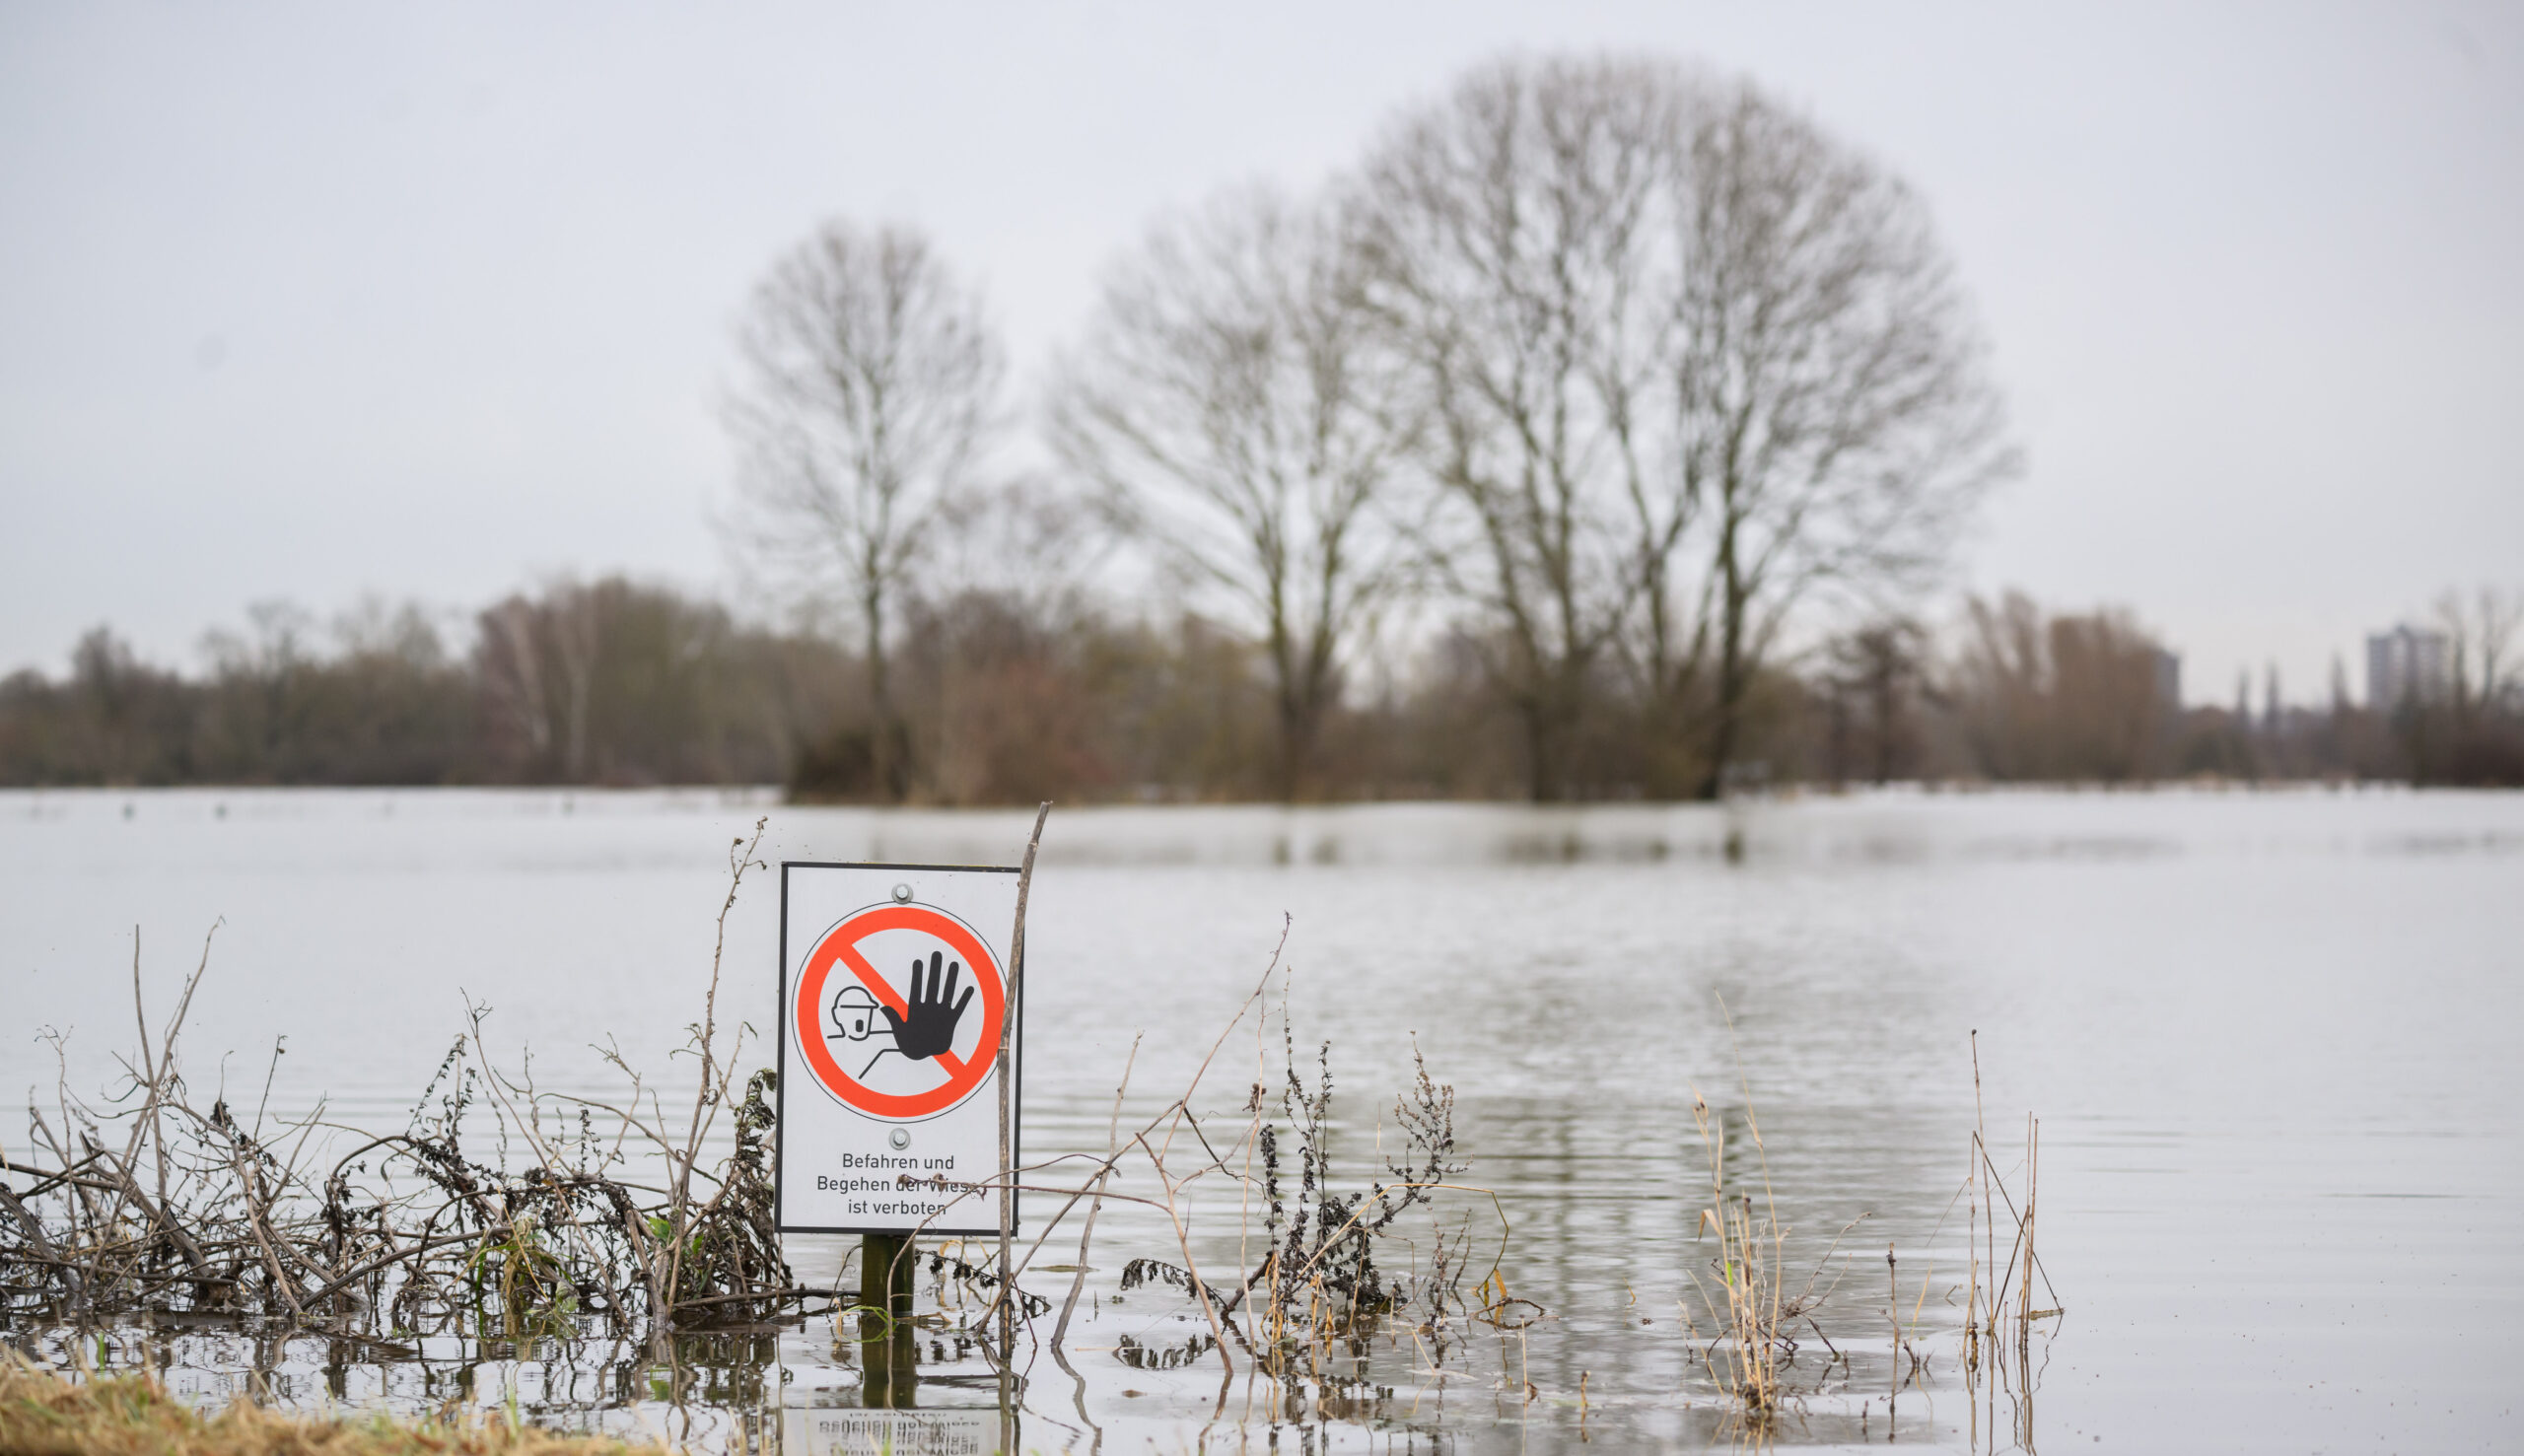 Ein Schild „Befahren und Begehen der Wiese ist verboten“ steht an einer überfluteten Wiese an der Leinemasch in der südlichen Region Hannover.